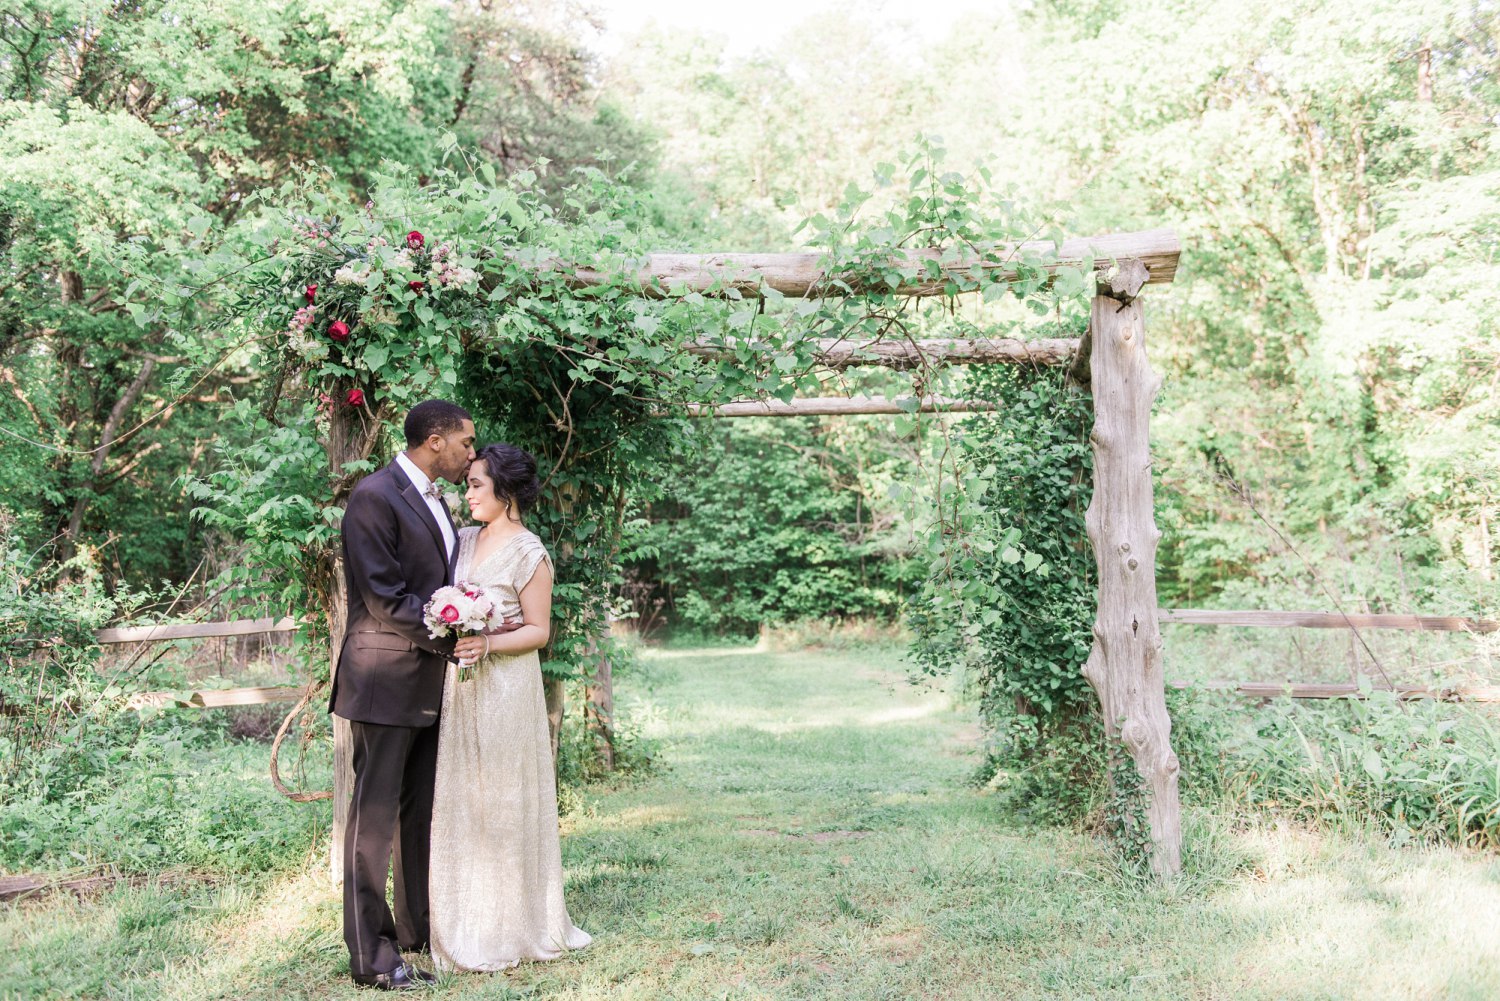 ijams nature center wedding - knoxville wedding photographer - juicebeats photography